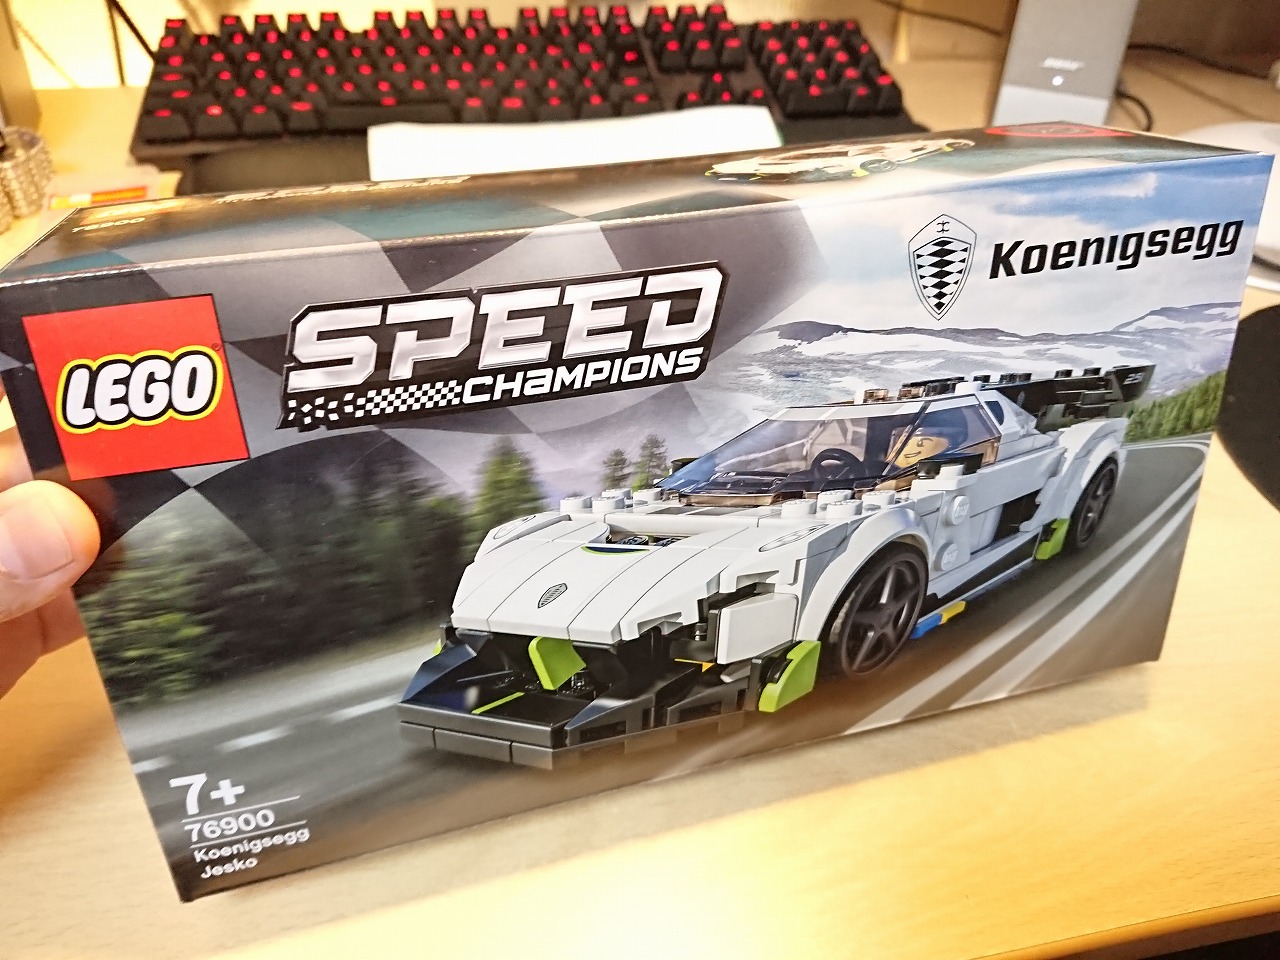 レゴ(LEGO) スピードチャンピオン ケーニグセグ ジェスコ 76900 を作ってみた(その1)